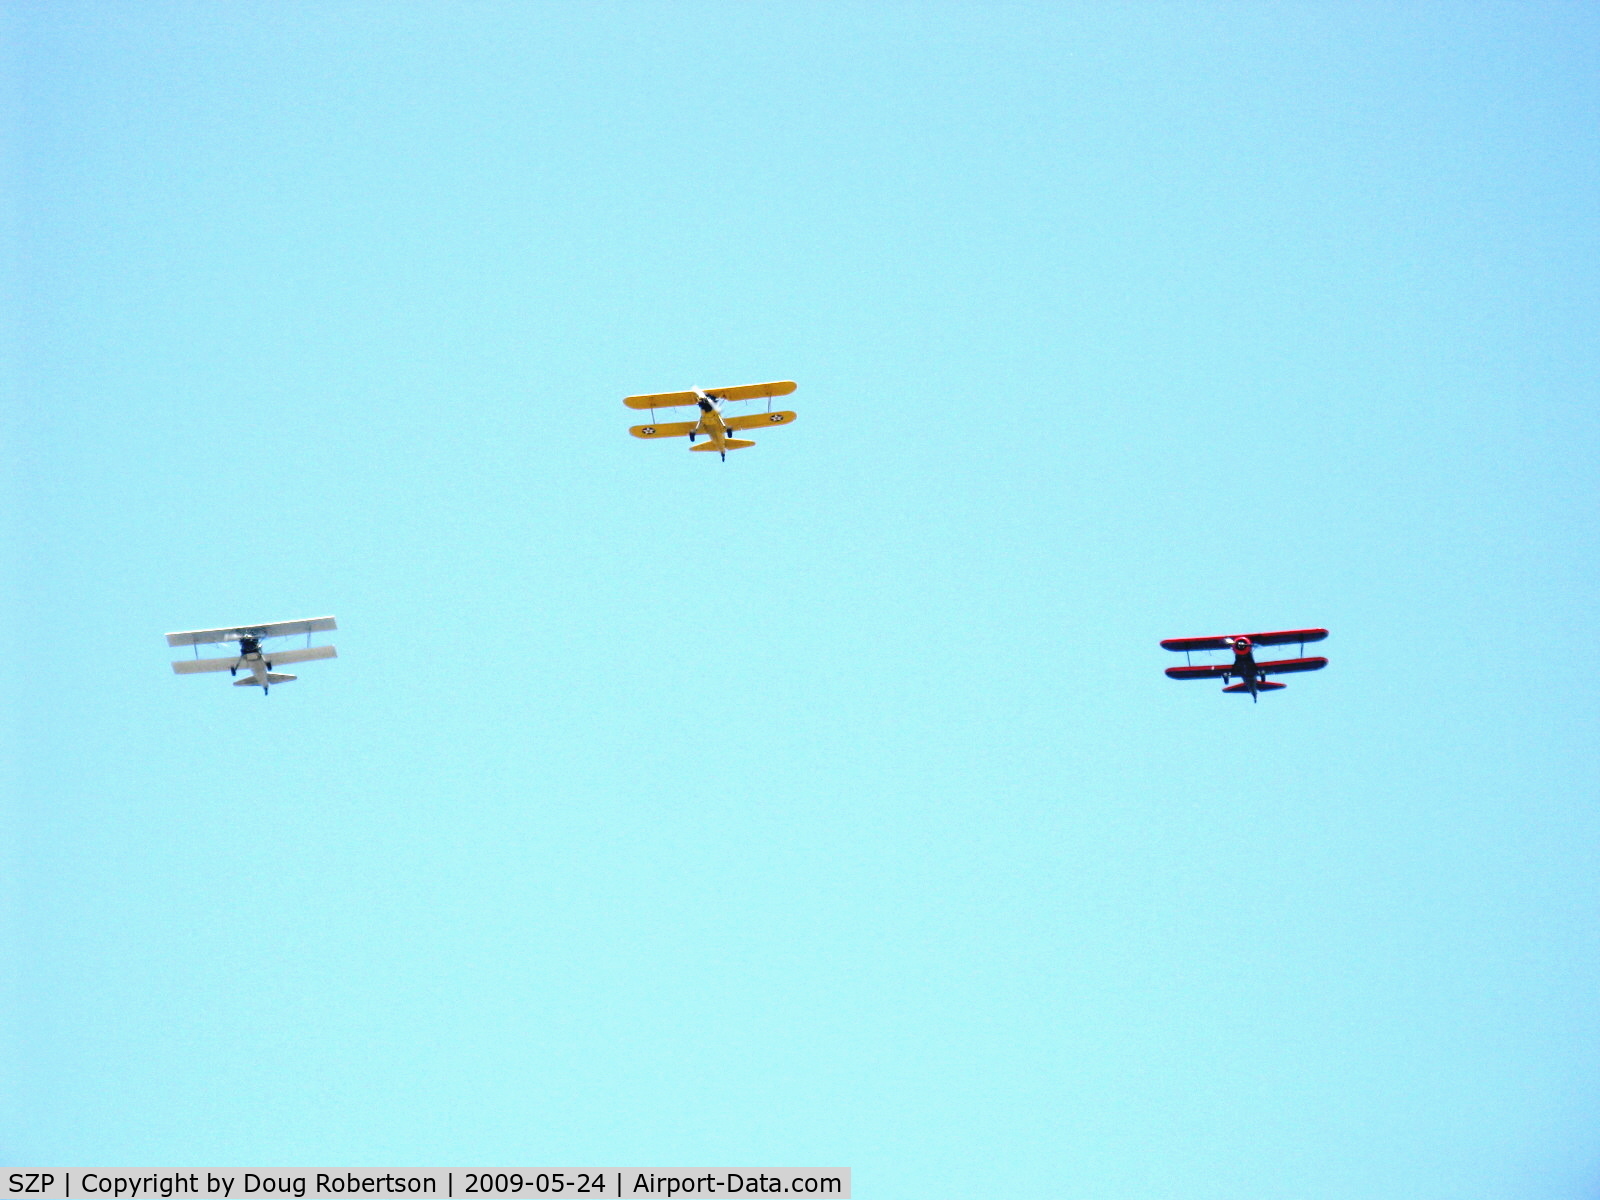 Santa Paula Airport (SZP) - Three Boeing Stearmans in Tribute Formation N65124, N69765, N59031